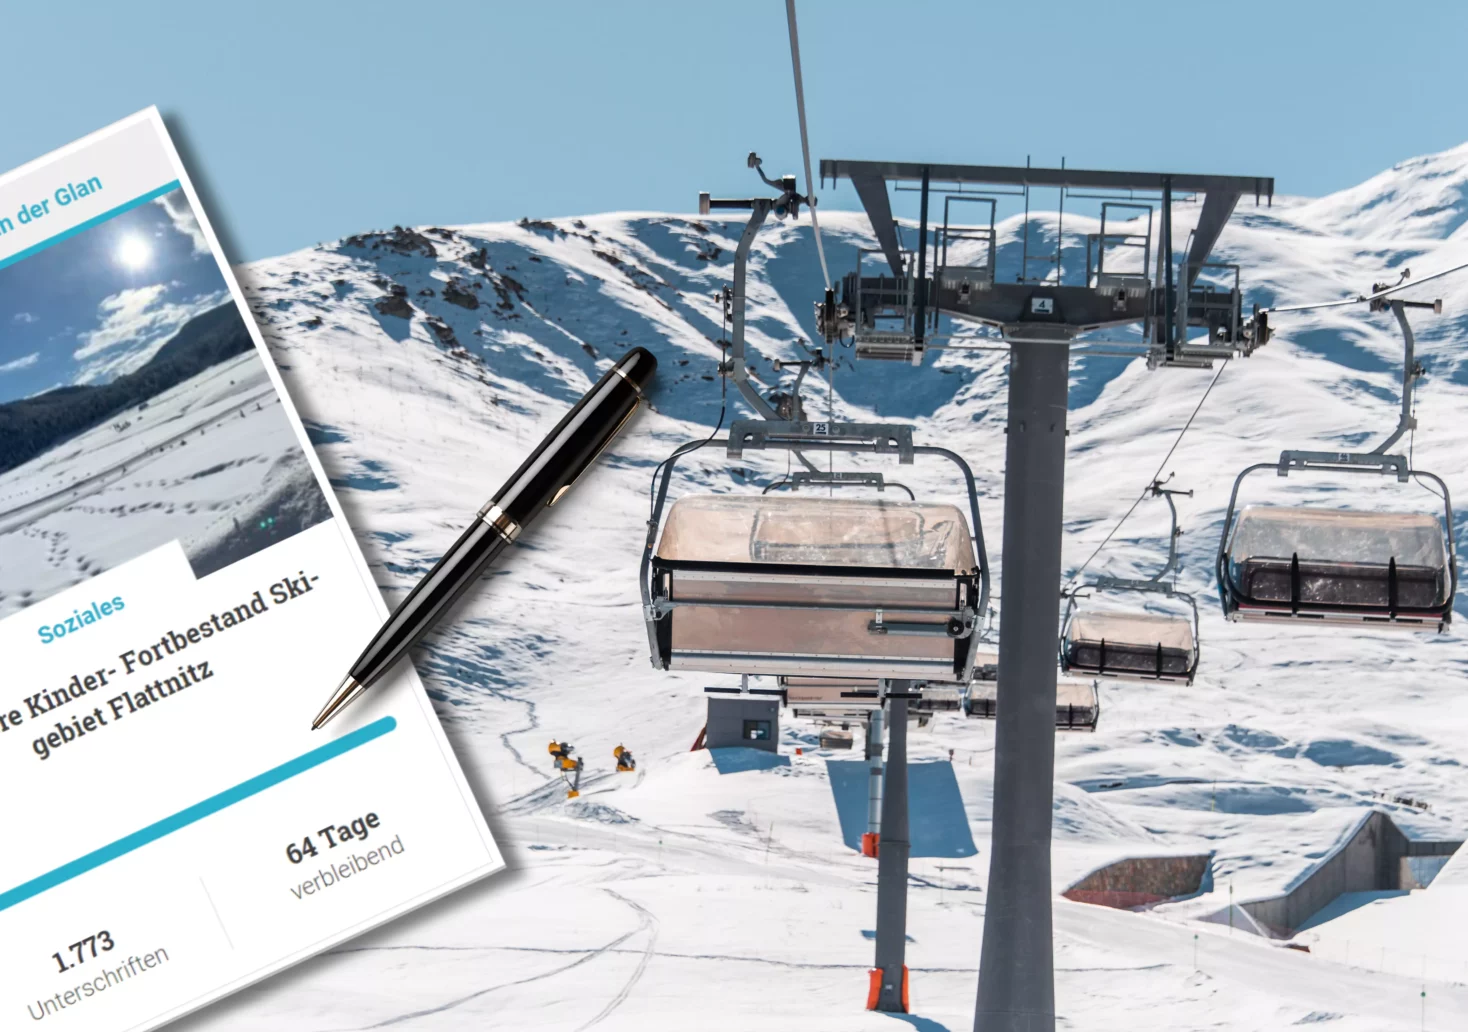 „Für unsere Kinder“: Petition soll Skigebiet auf der Flattnitz retten